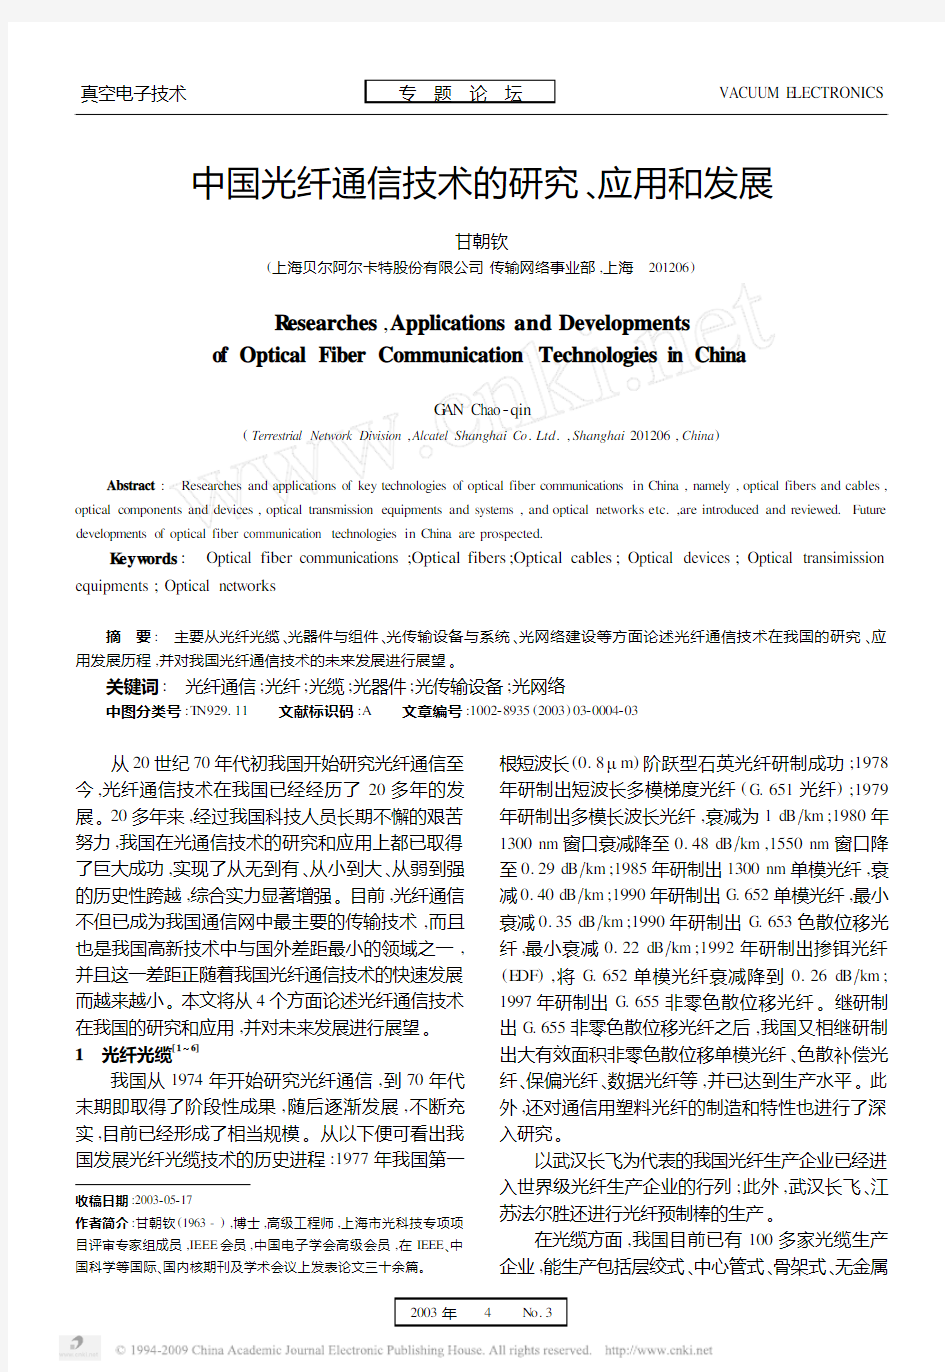 中国光纤通信技术的研究_应用和发展